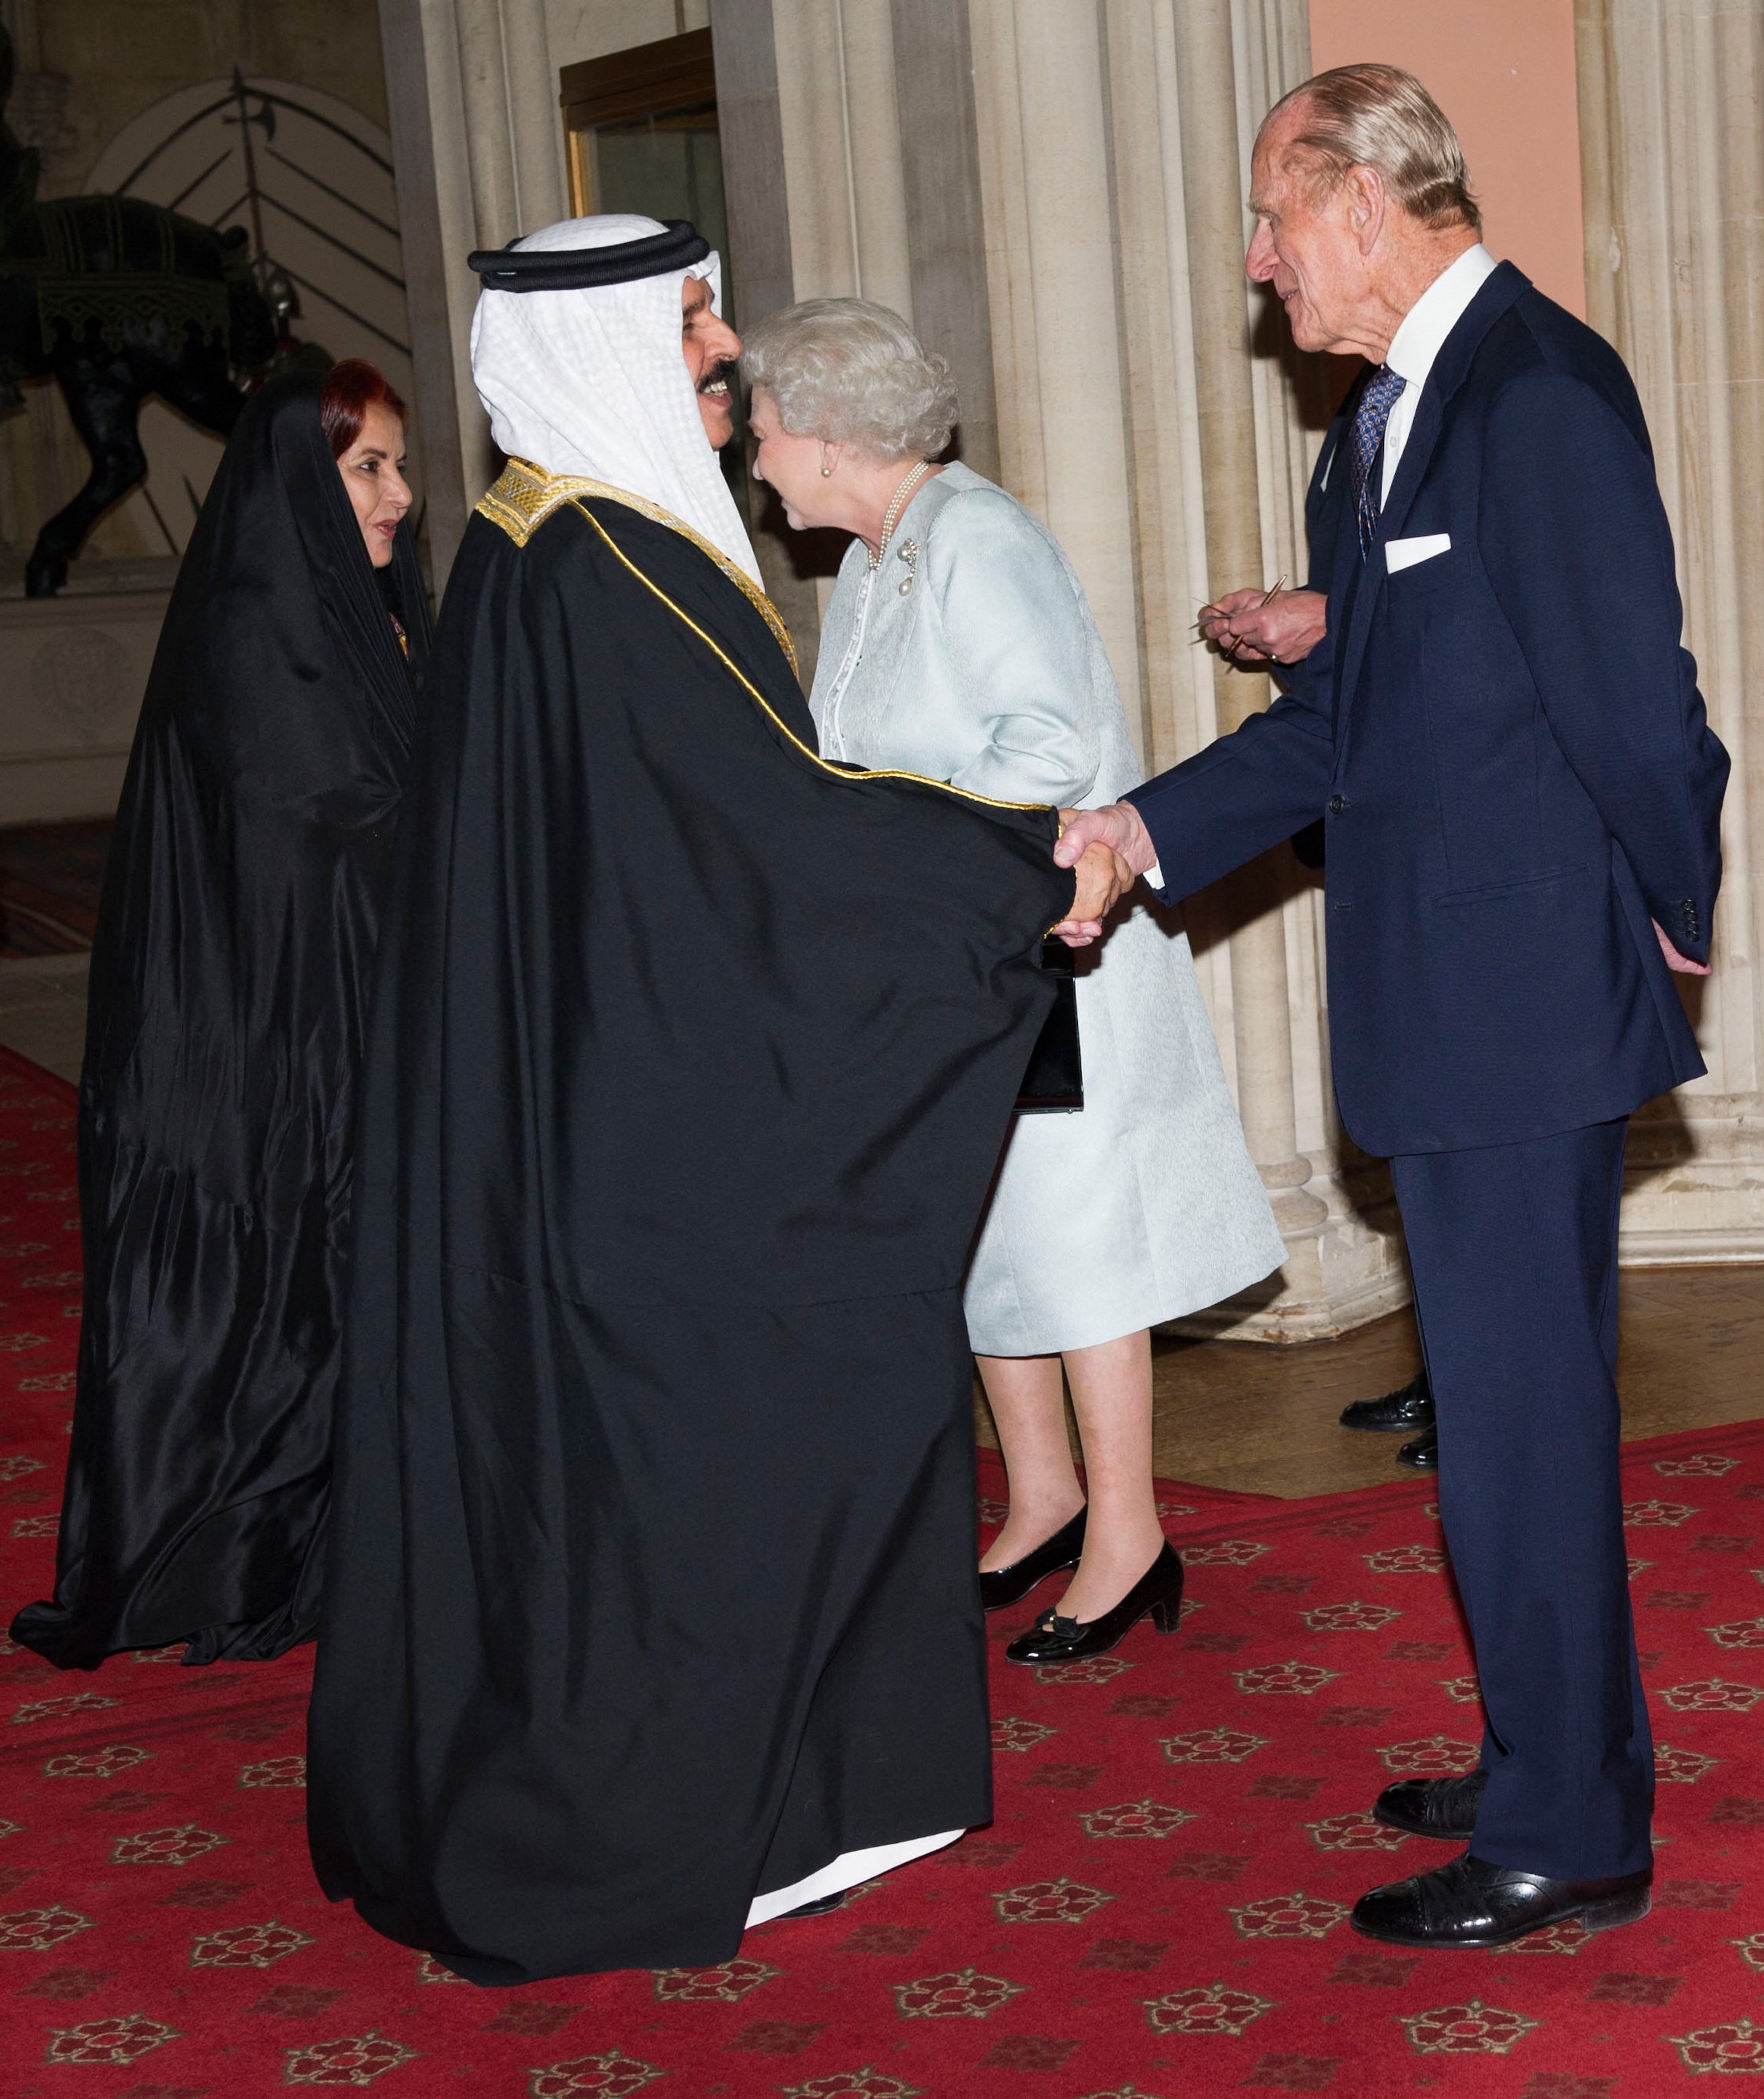 La reine Elizabeth II et le prince Philip saluent le roi de Bahreïn Hamad ben Issa al-Khalifa et son épouse cheikha Sabika bint Ibrahim al-Khalifa au château de Windsor en mai 2012, lors d’un déjeuner du jubilé du souverain organisé par la reine Elizabeth II (AFP)